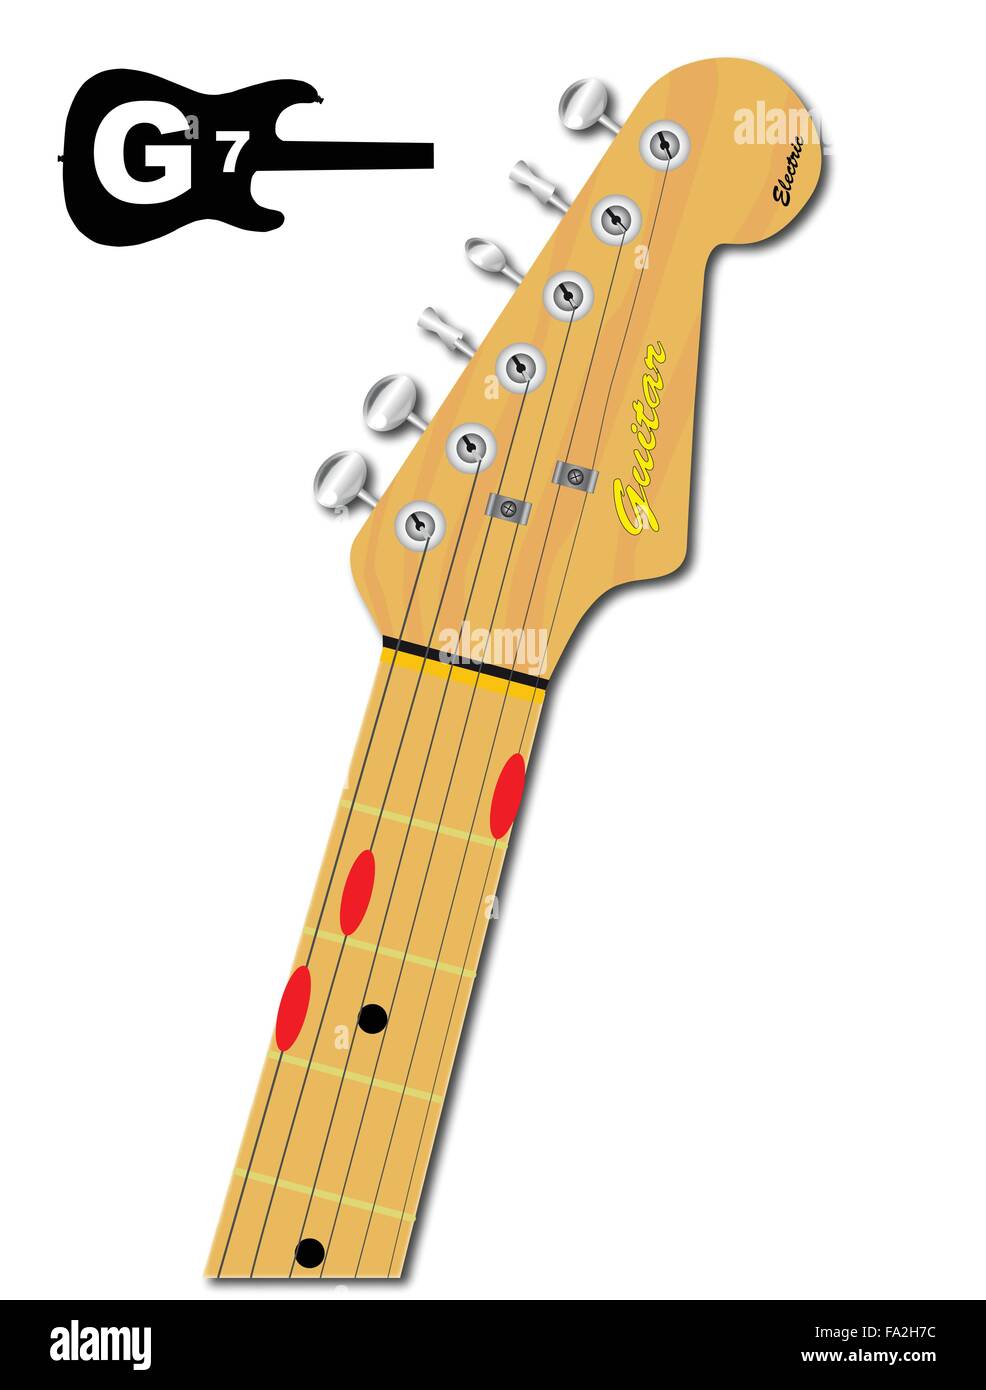 Una chitarra elettrica del collo con la conformazione a corda di circonferenza per G settimo indicato con pulsanti rossi Illustrazione Vettoriale